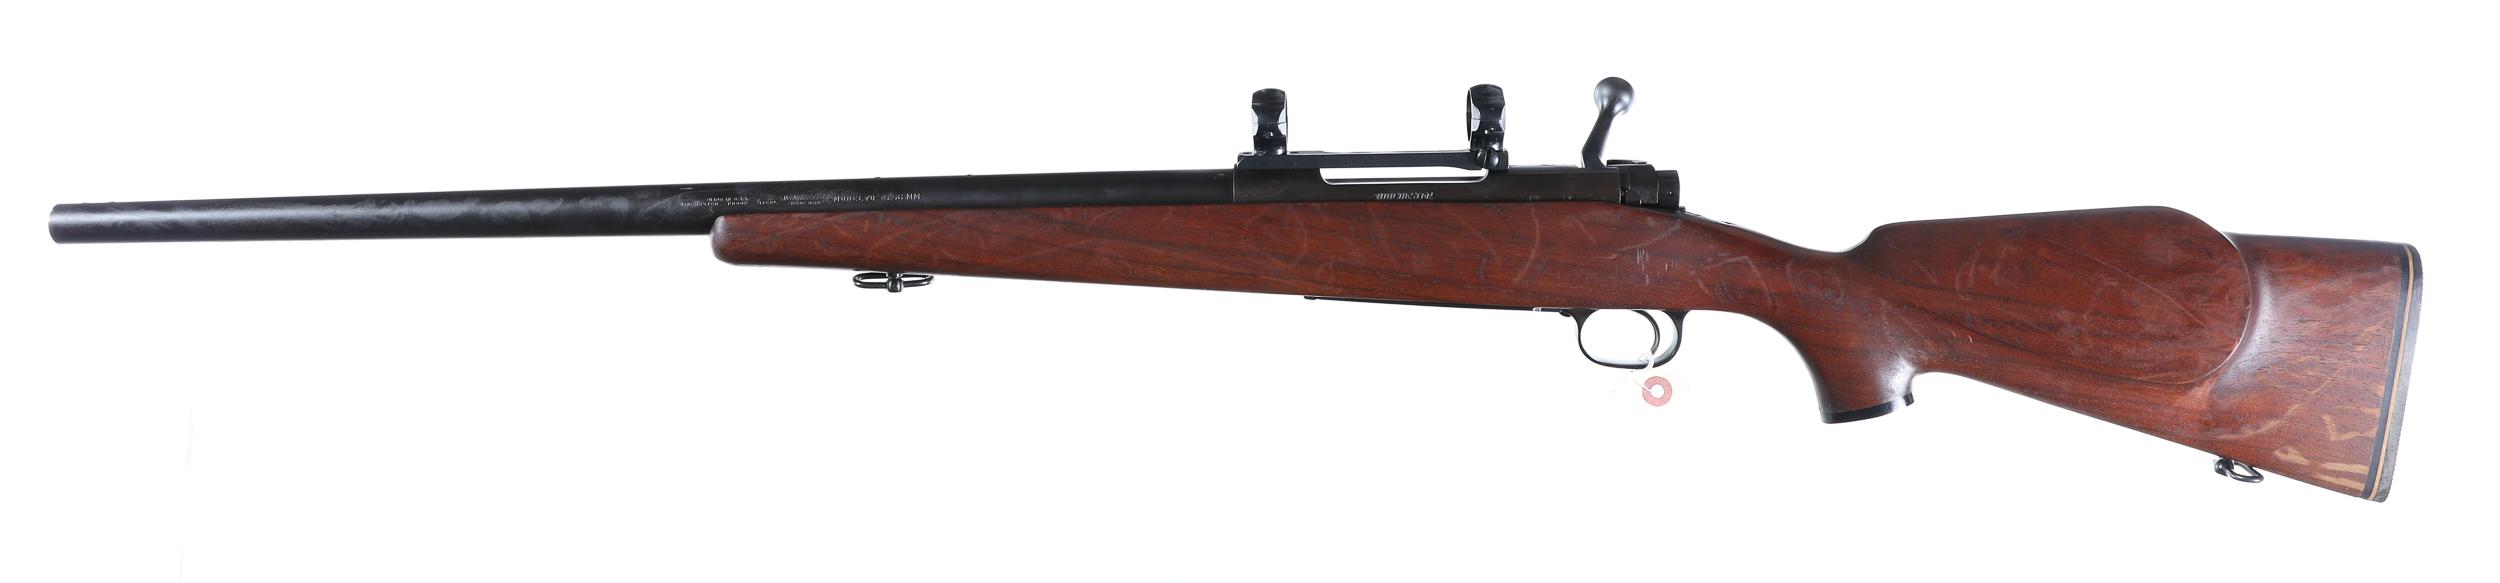 Winchester 70 Bolt Rifle 5.56 Nato